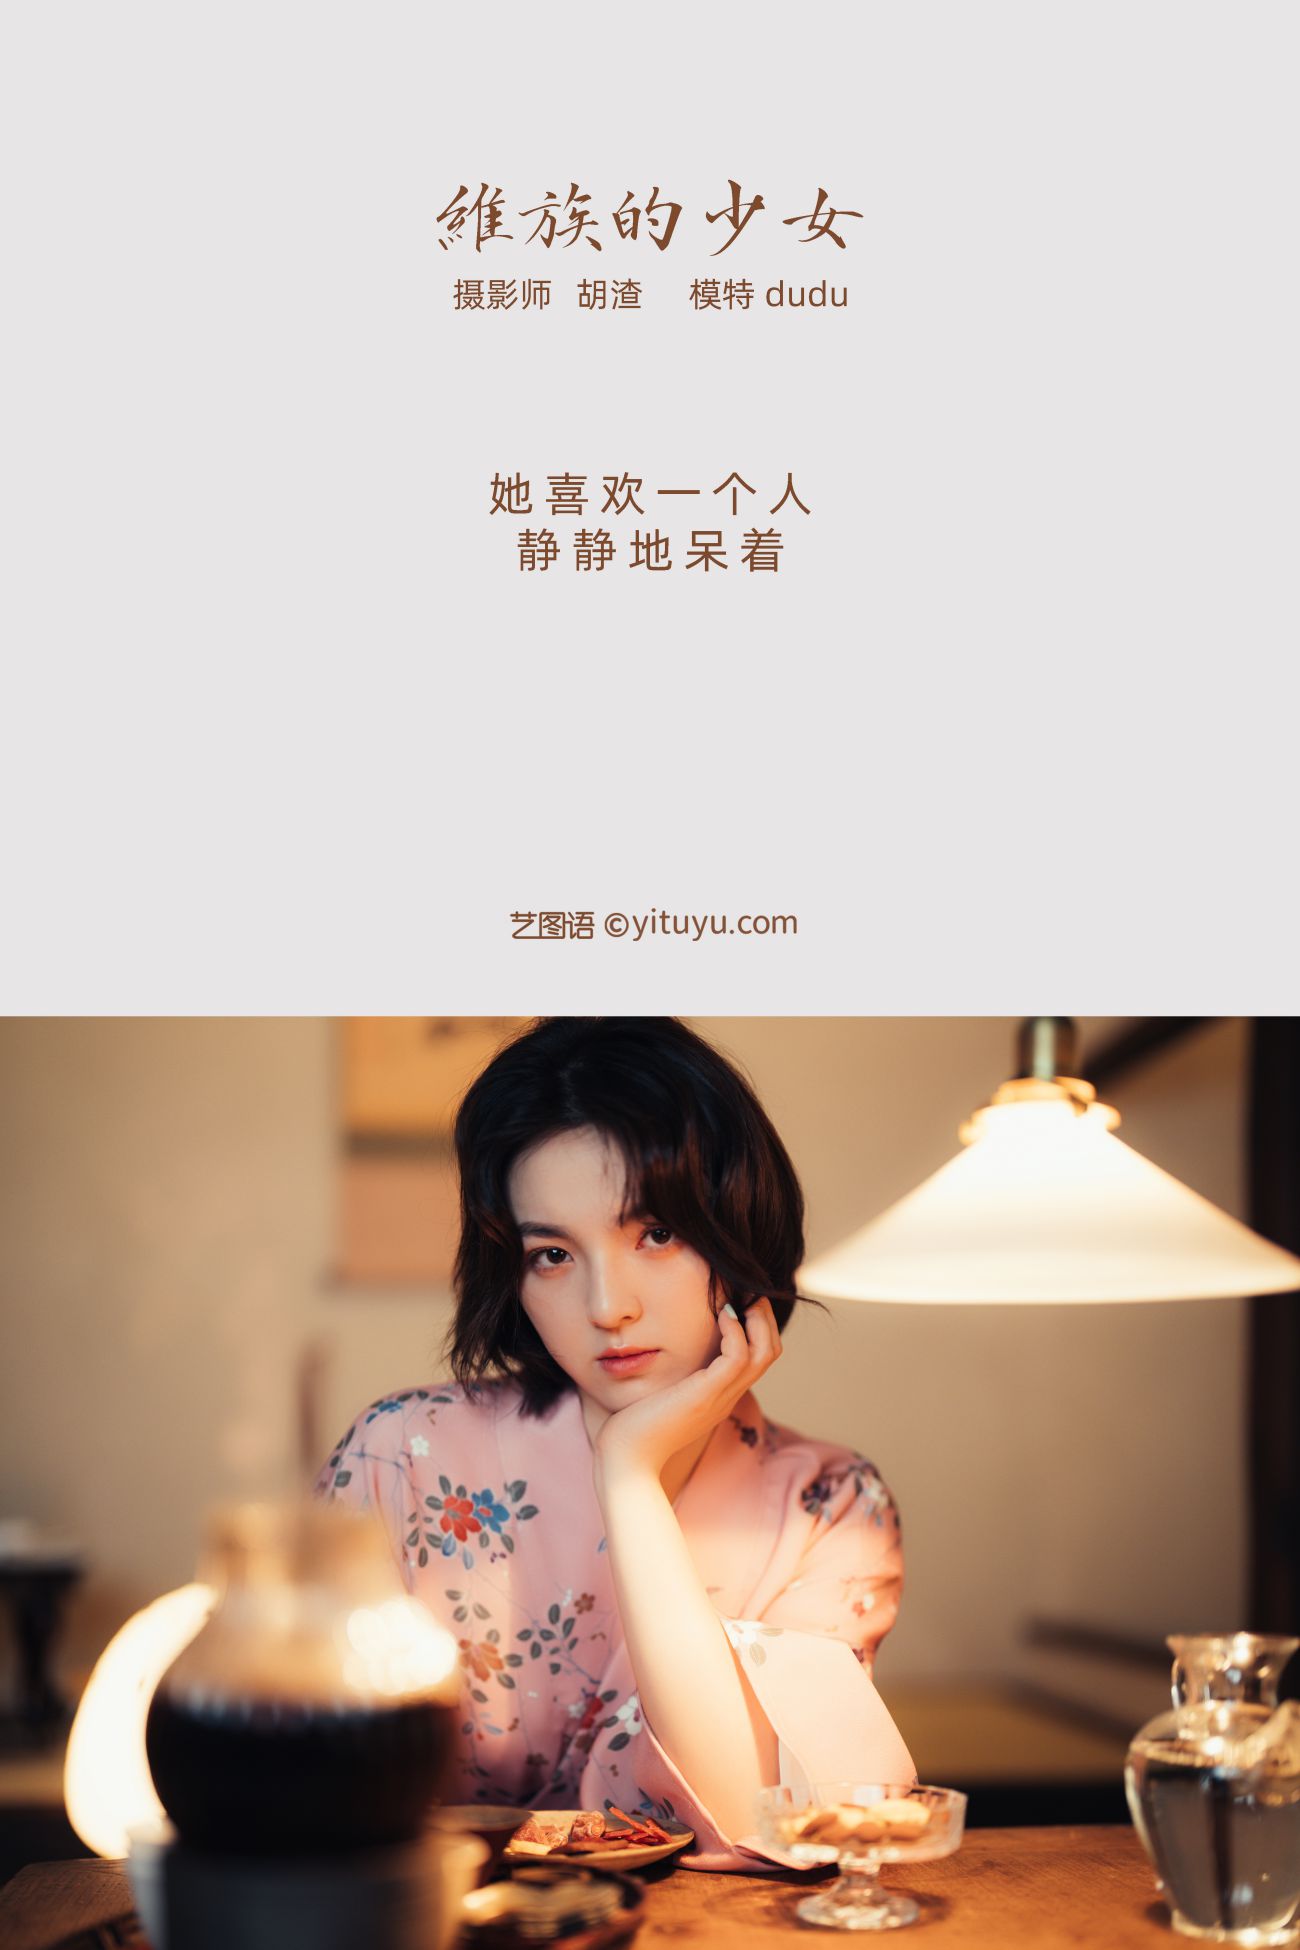 YITUYU艺图语模特唯美写真2021.11.19期维族的少女 dudu (2)